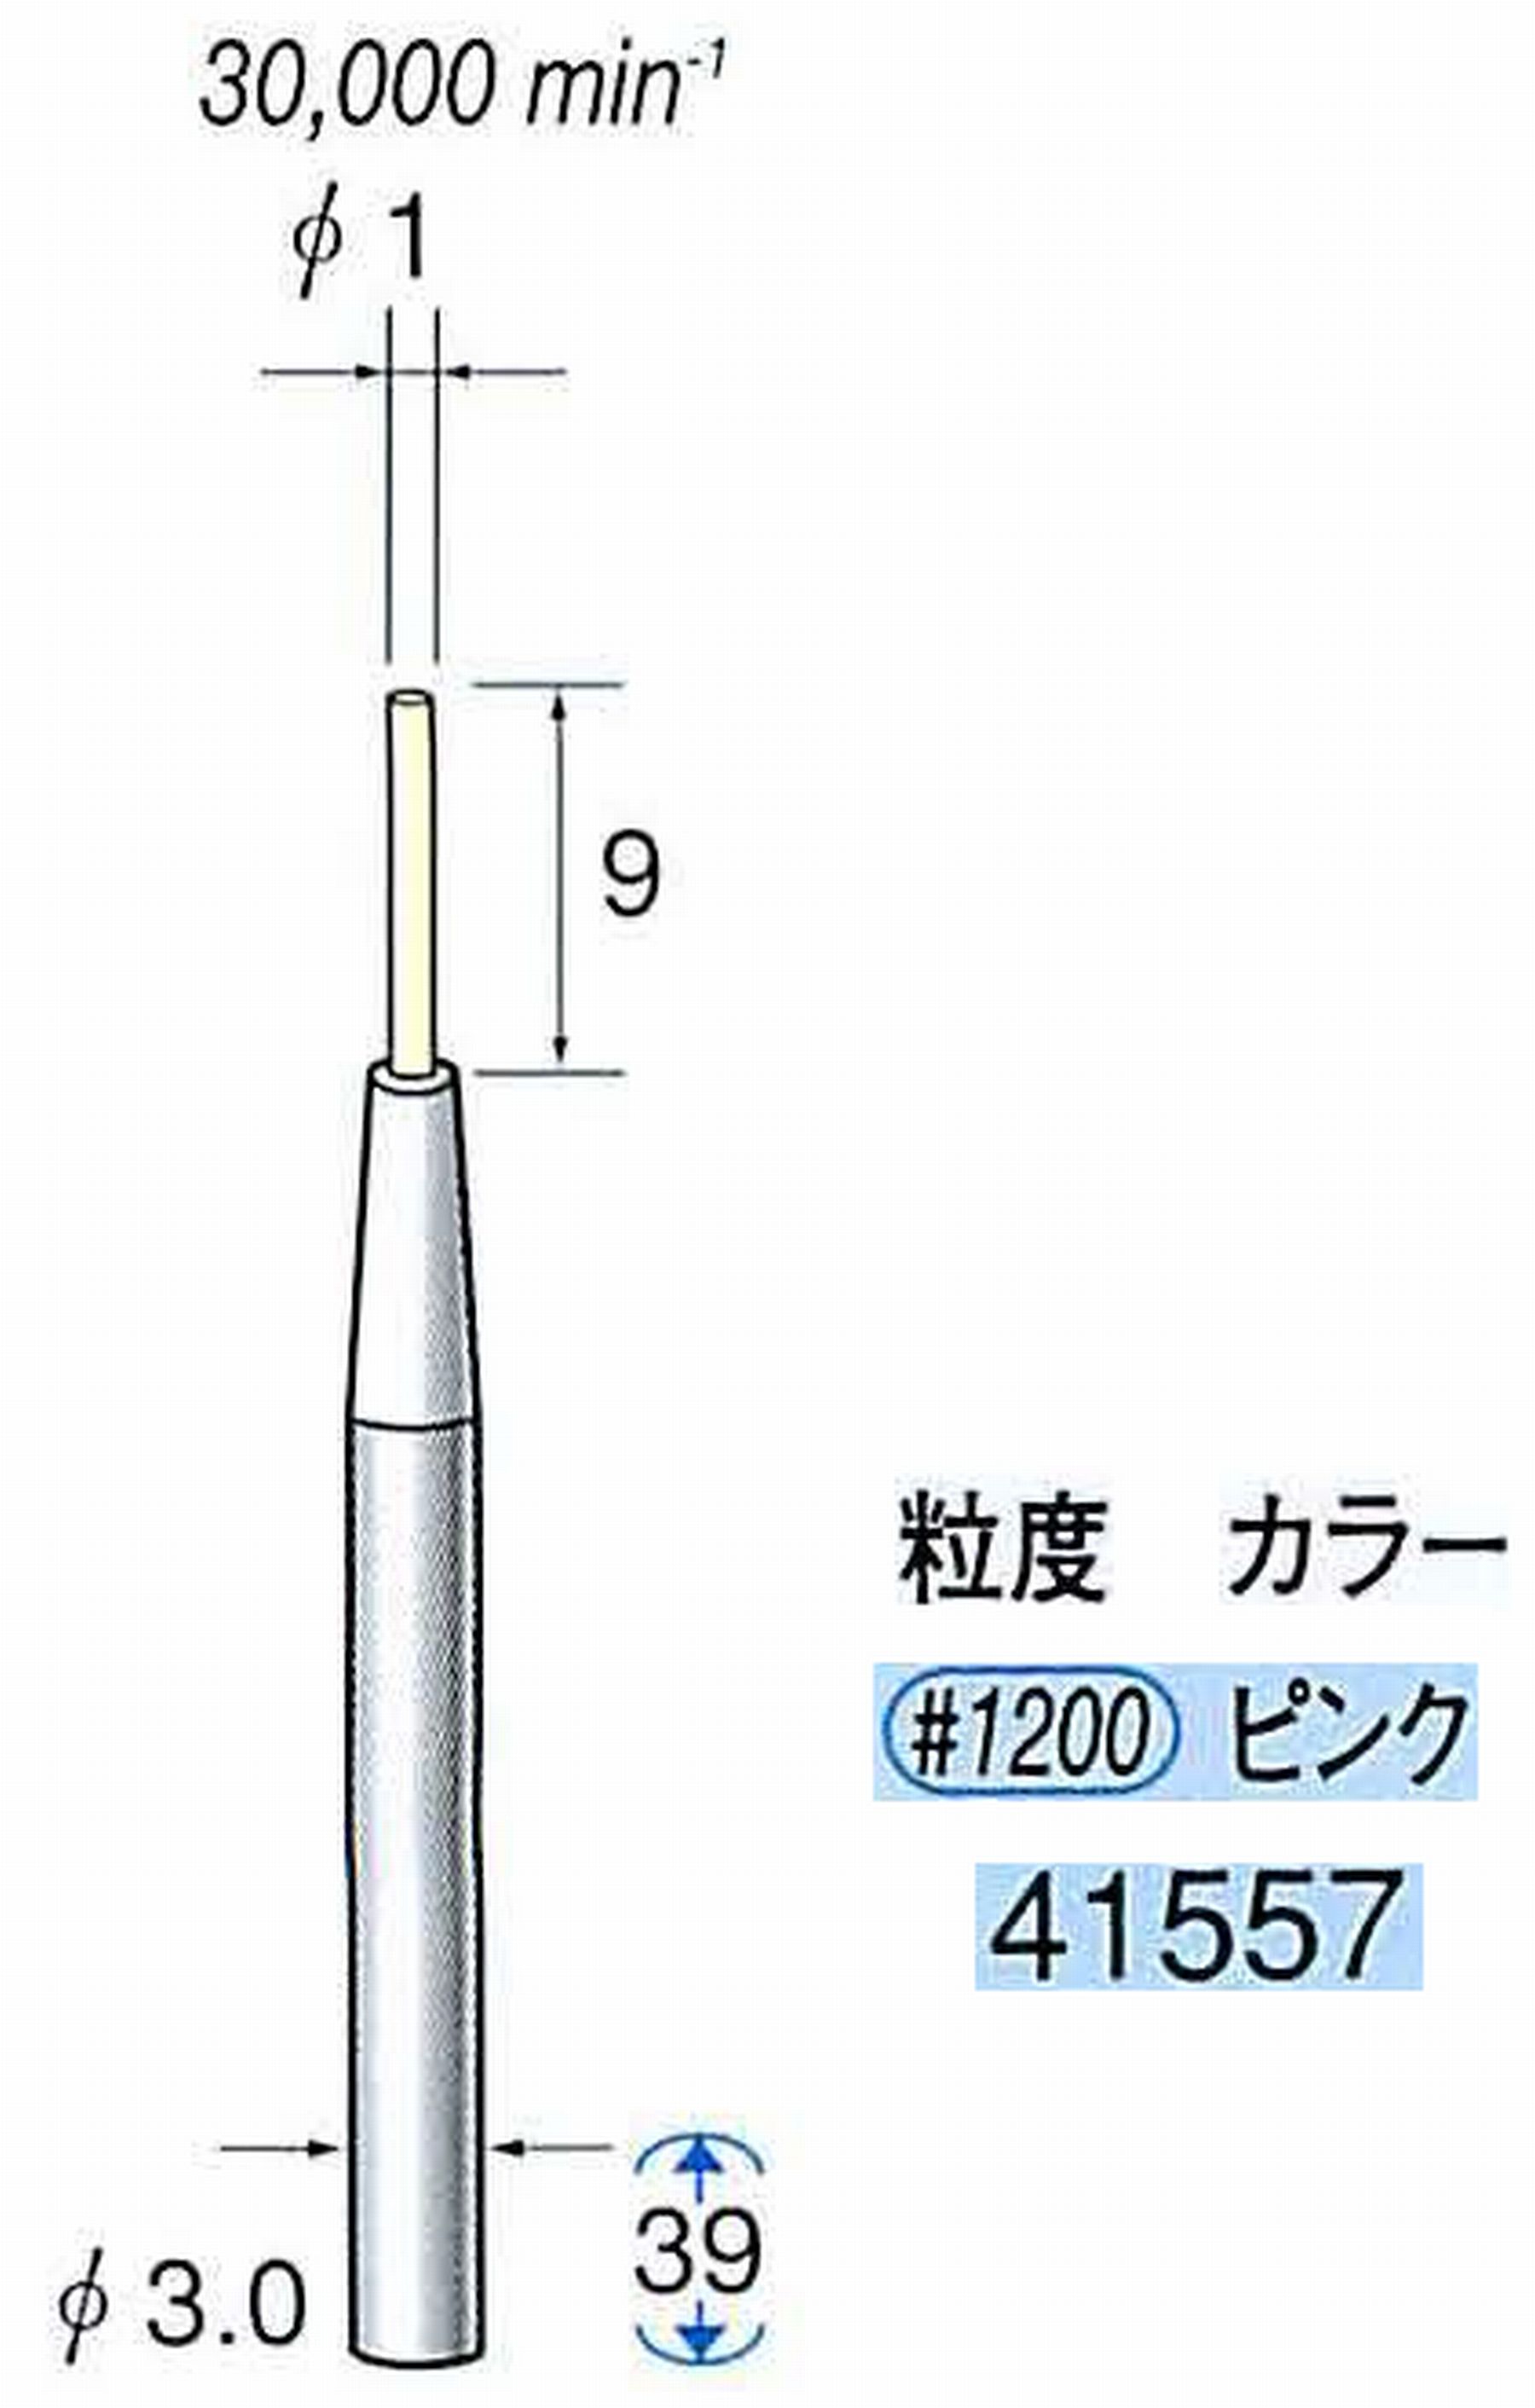 ナカニシ/NAKANISHI セラファイバー精密軸付砥石(カラー ピンク) 軸径(シャンク) φ3.0mm 41557